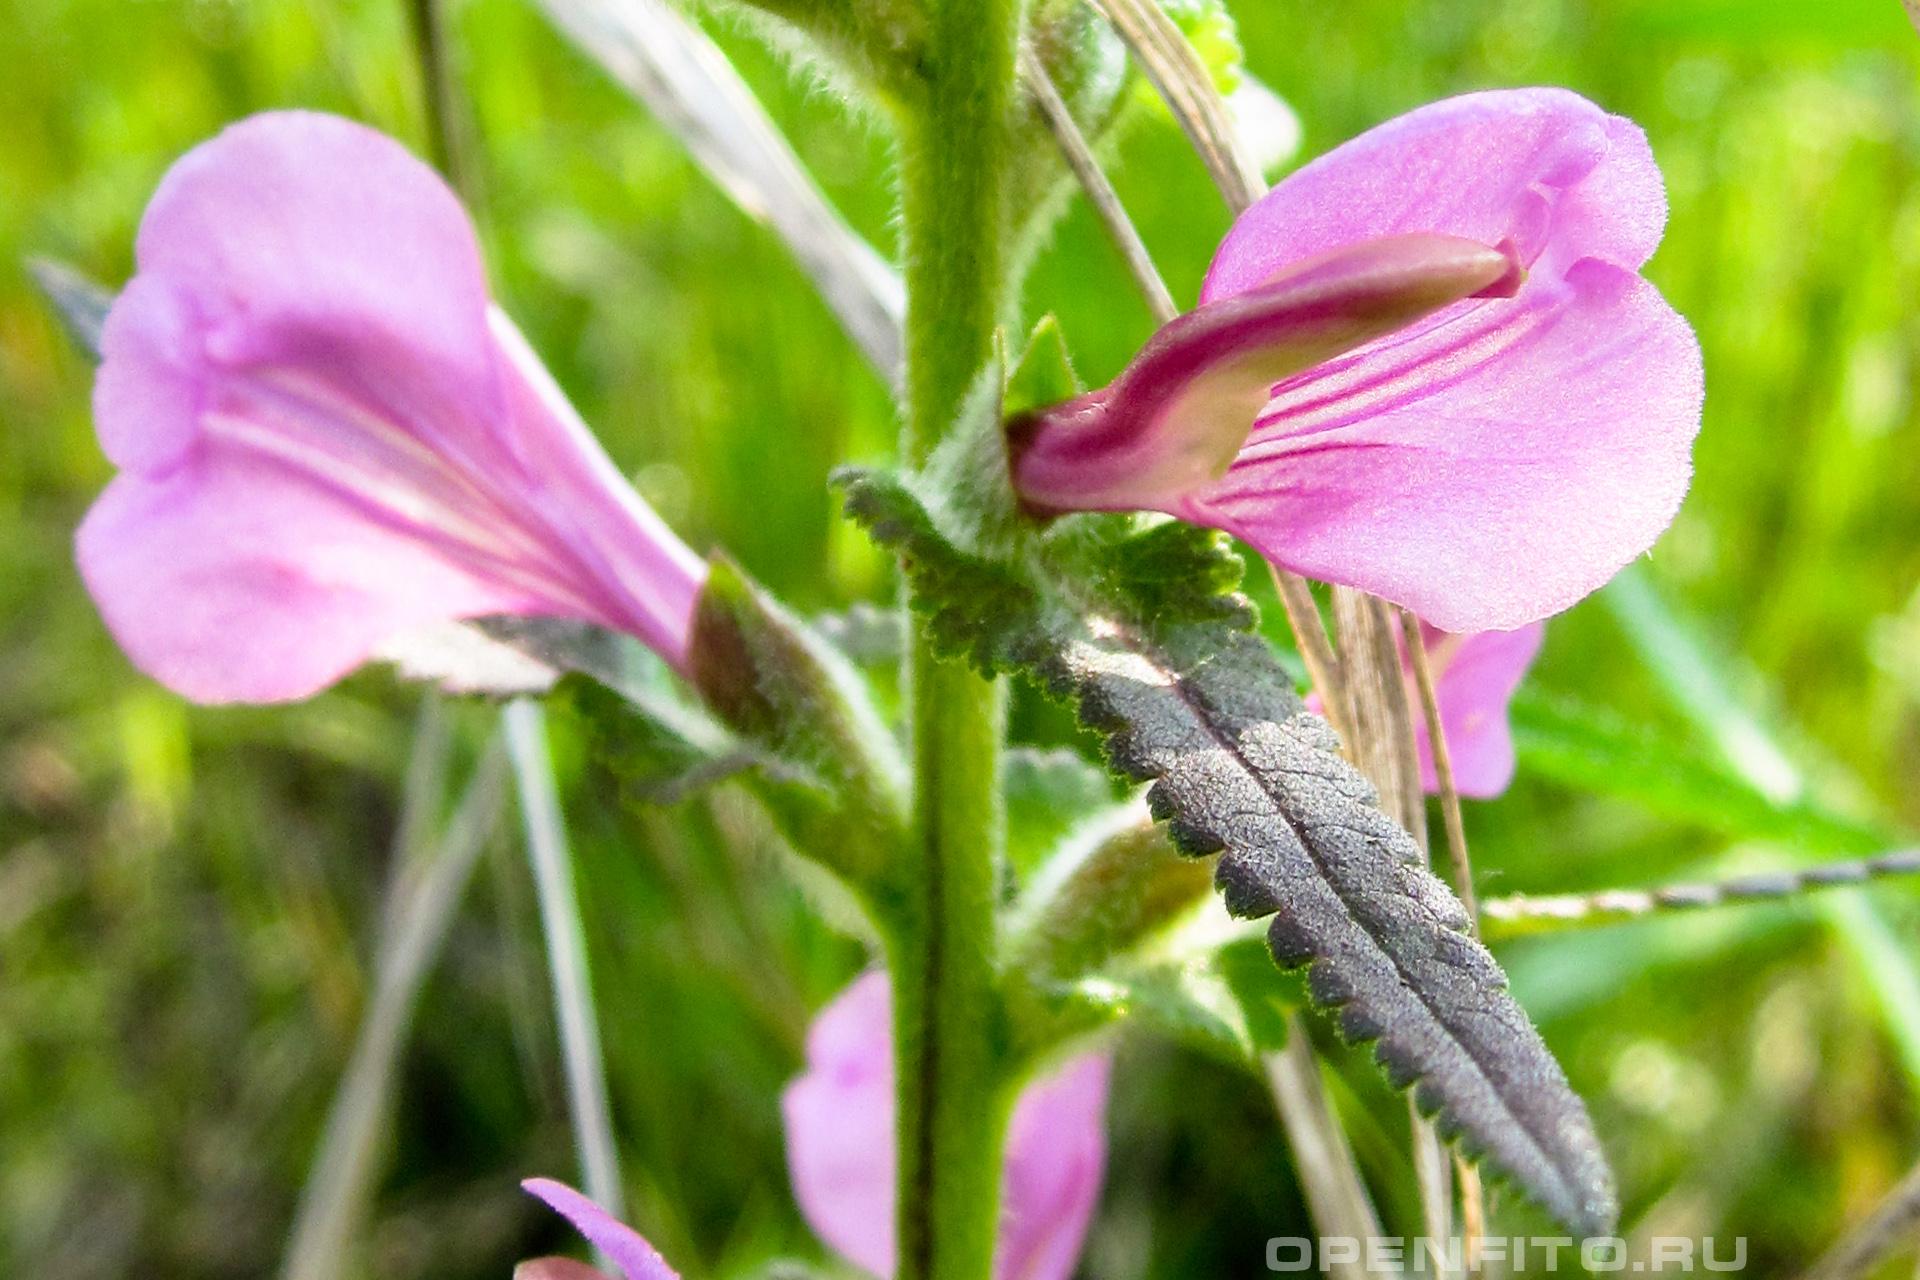 Мытник перевёрнутый - фотография цветка